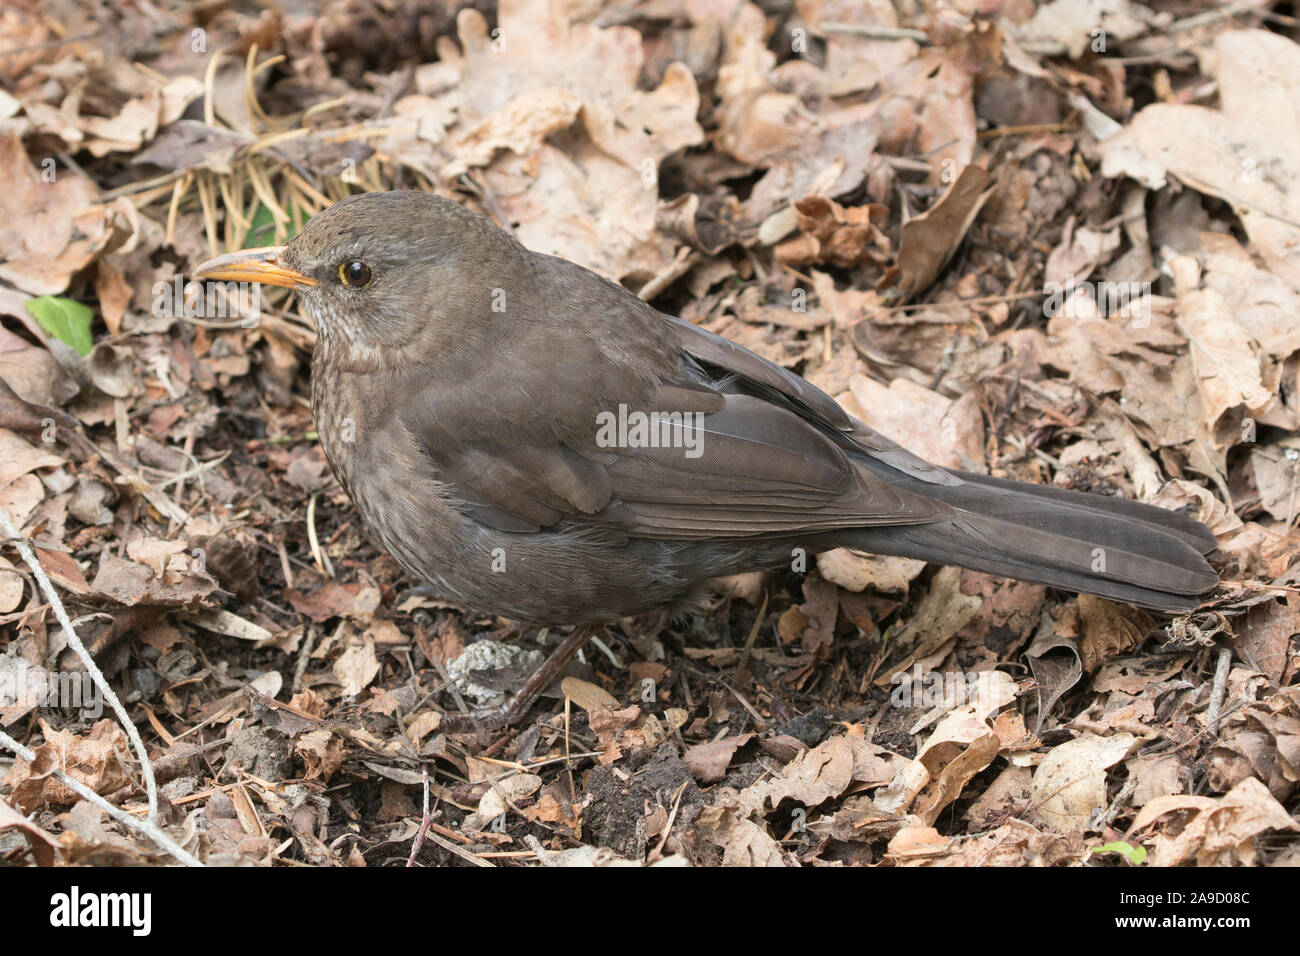 Juvenile  female blackbird amongst leaf litter Stock Photo